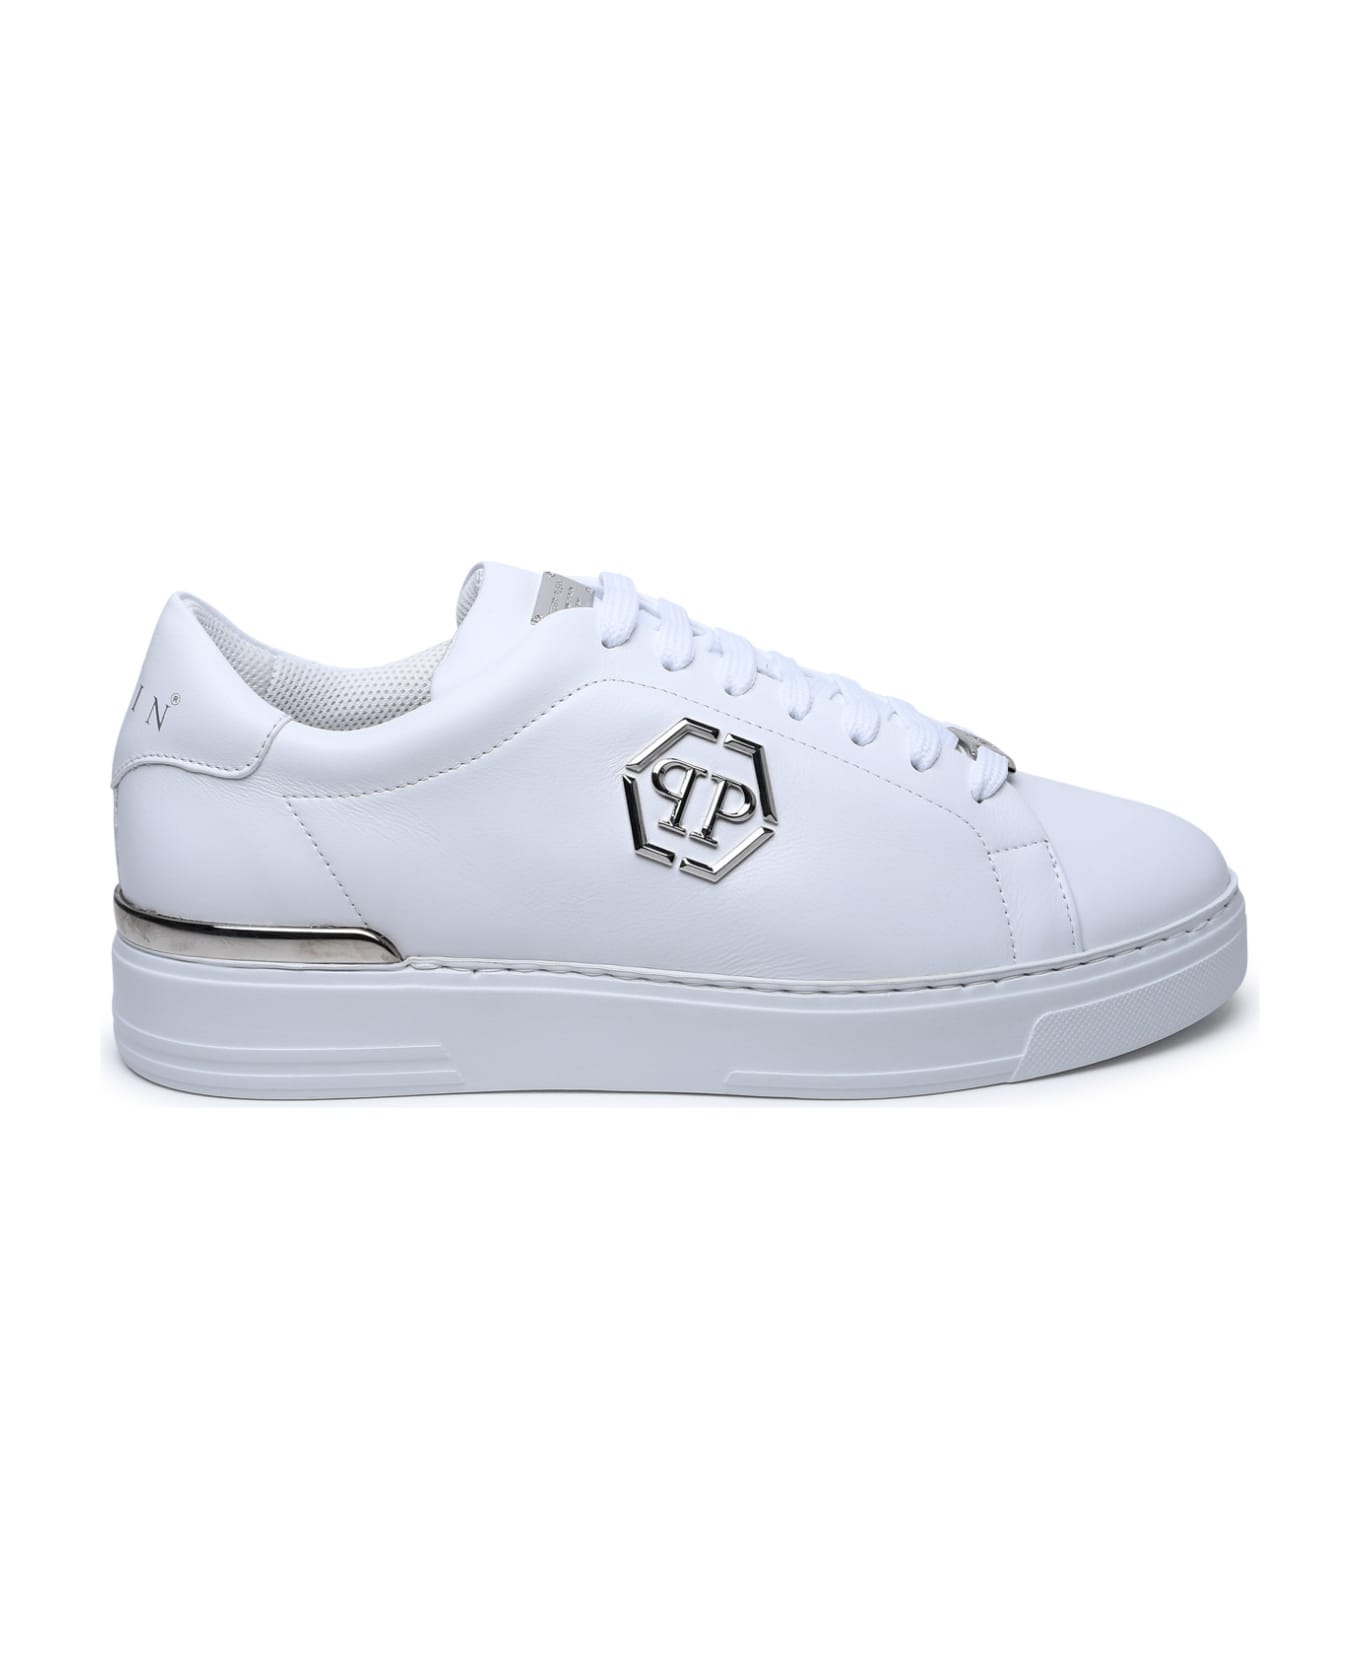 Philipp Plein Hexagon White Leather Sneakers - White